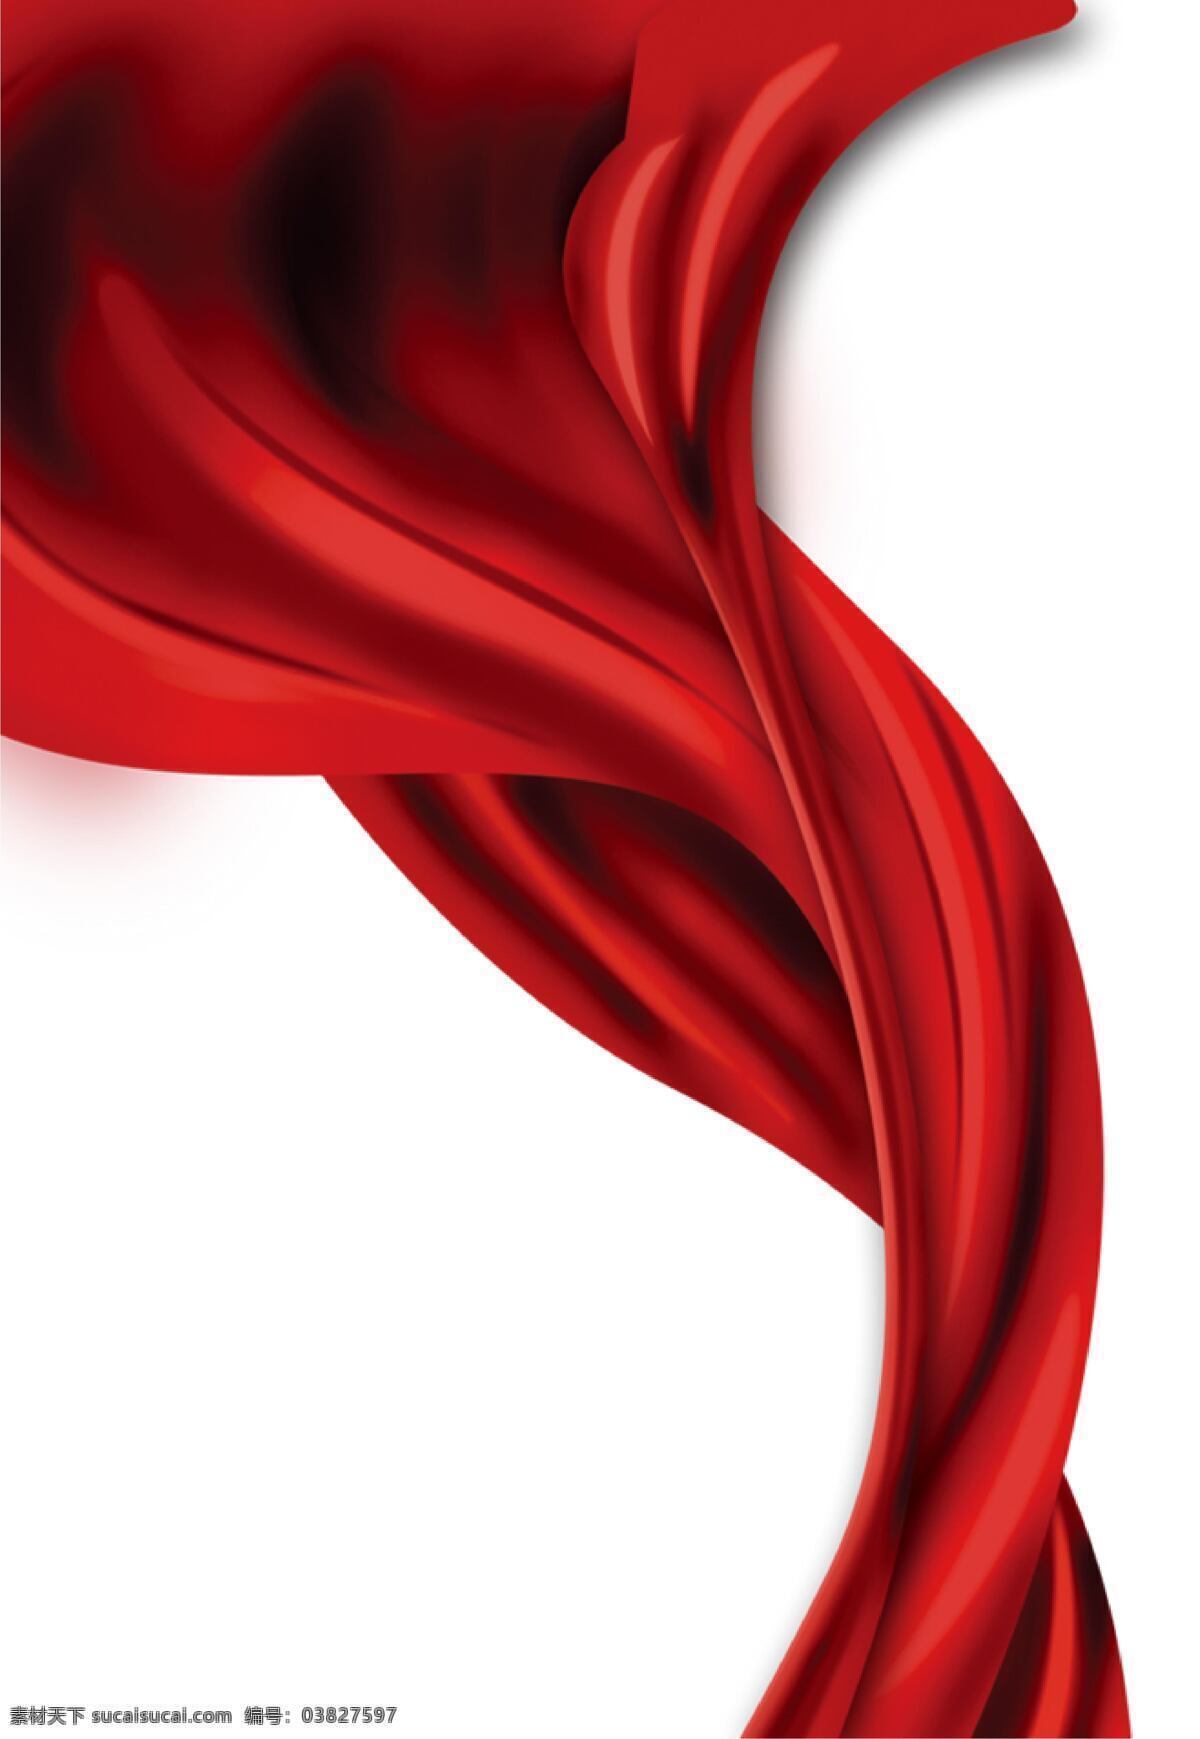 红色丝带图片 海报 背景 国庆节 元素